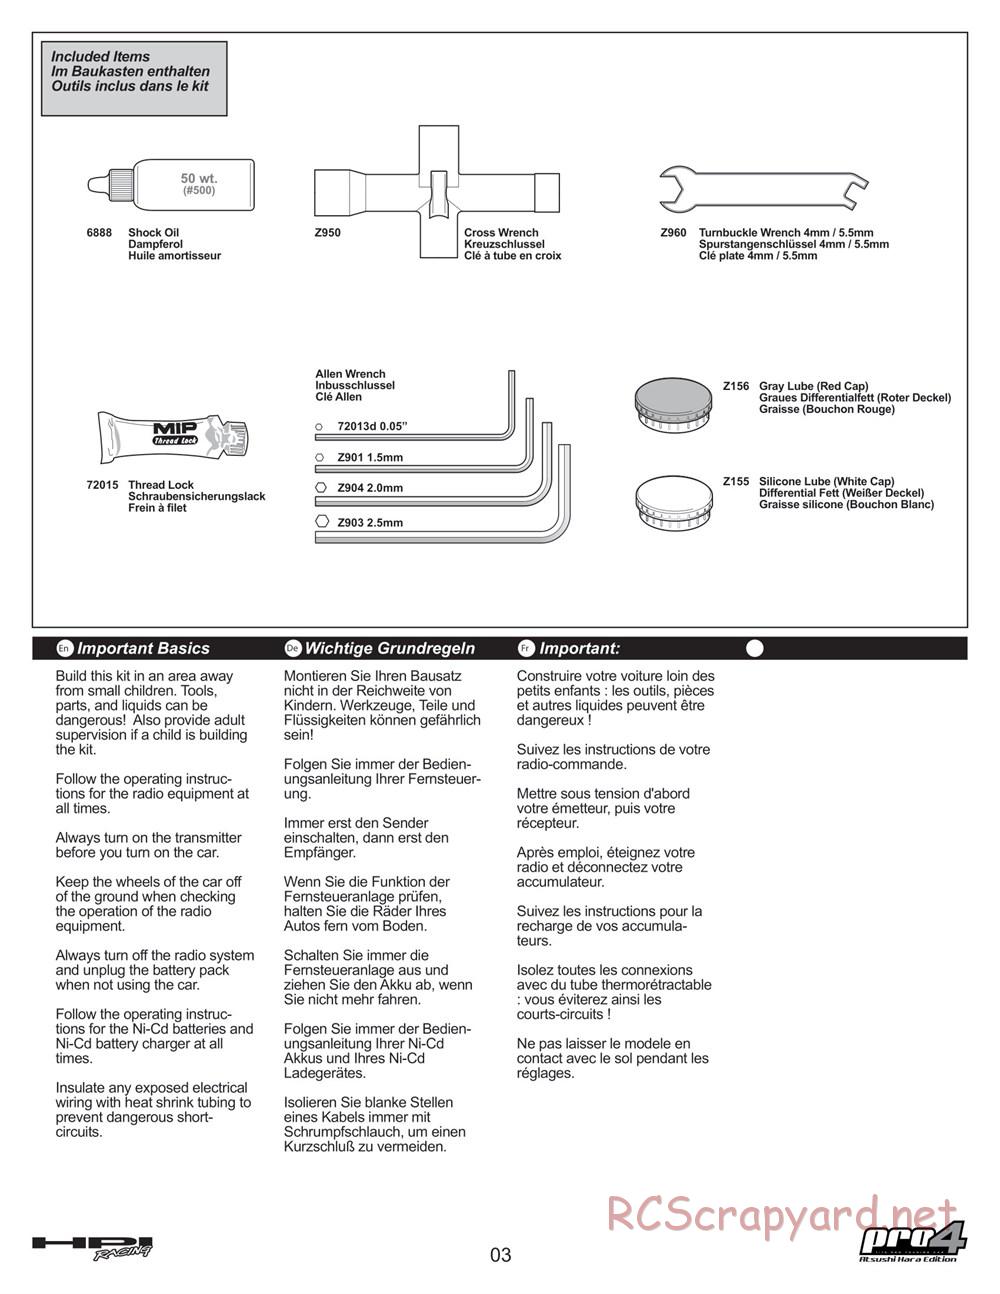 HPI - Pro4 Hara Edition - Manual - Page 3